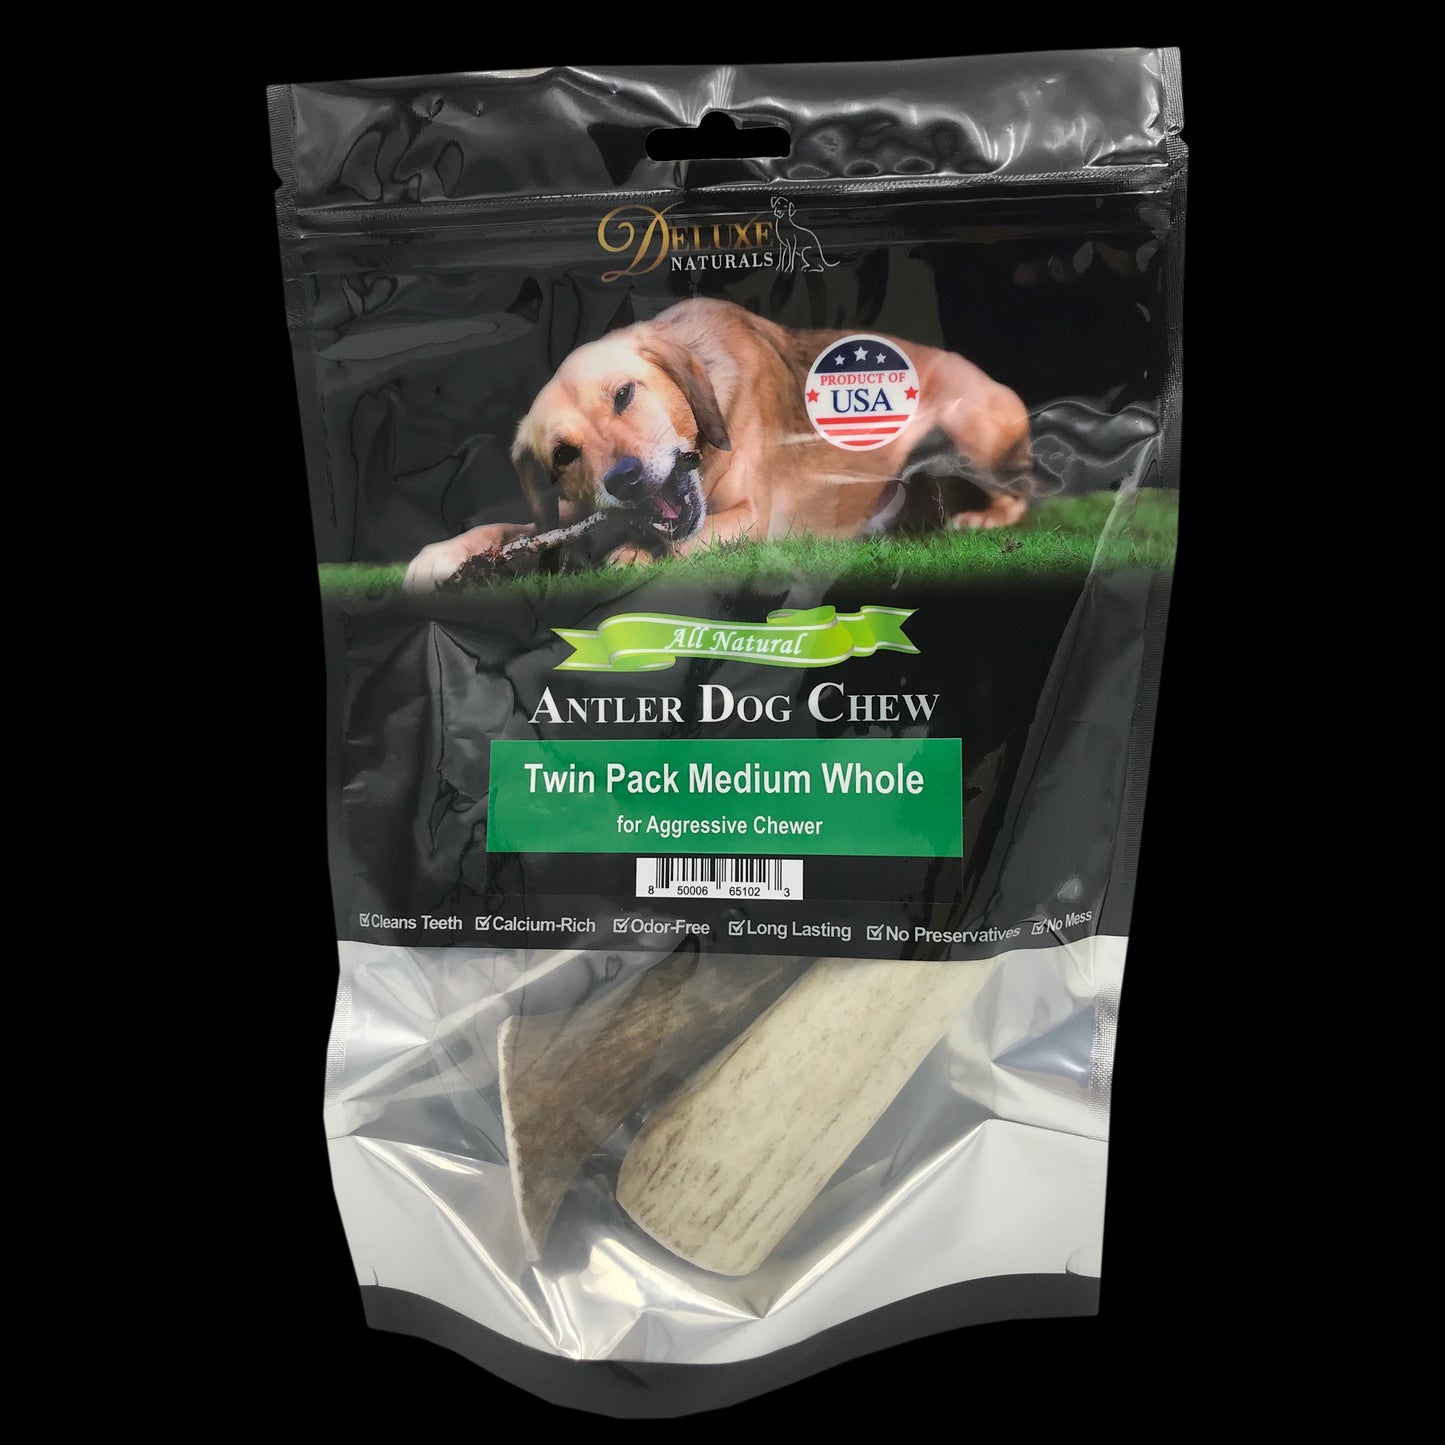 Deluxe Naturals Twin Pack Elk Antler Dog Chew - Medium Whole